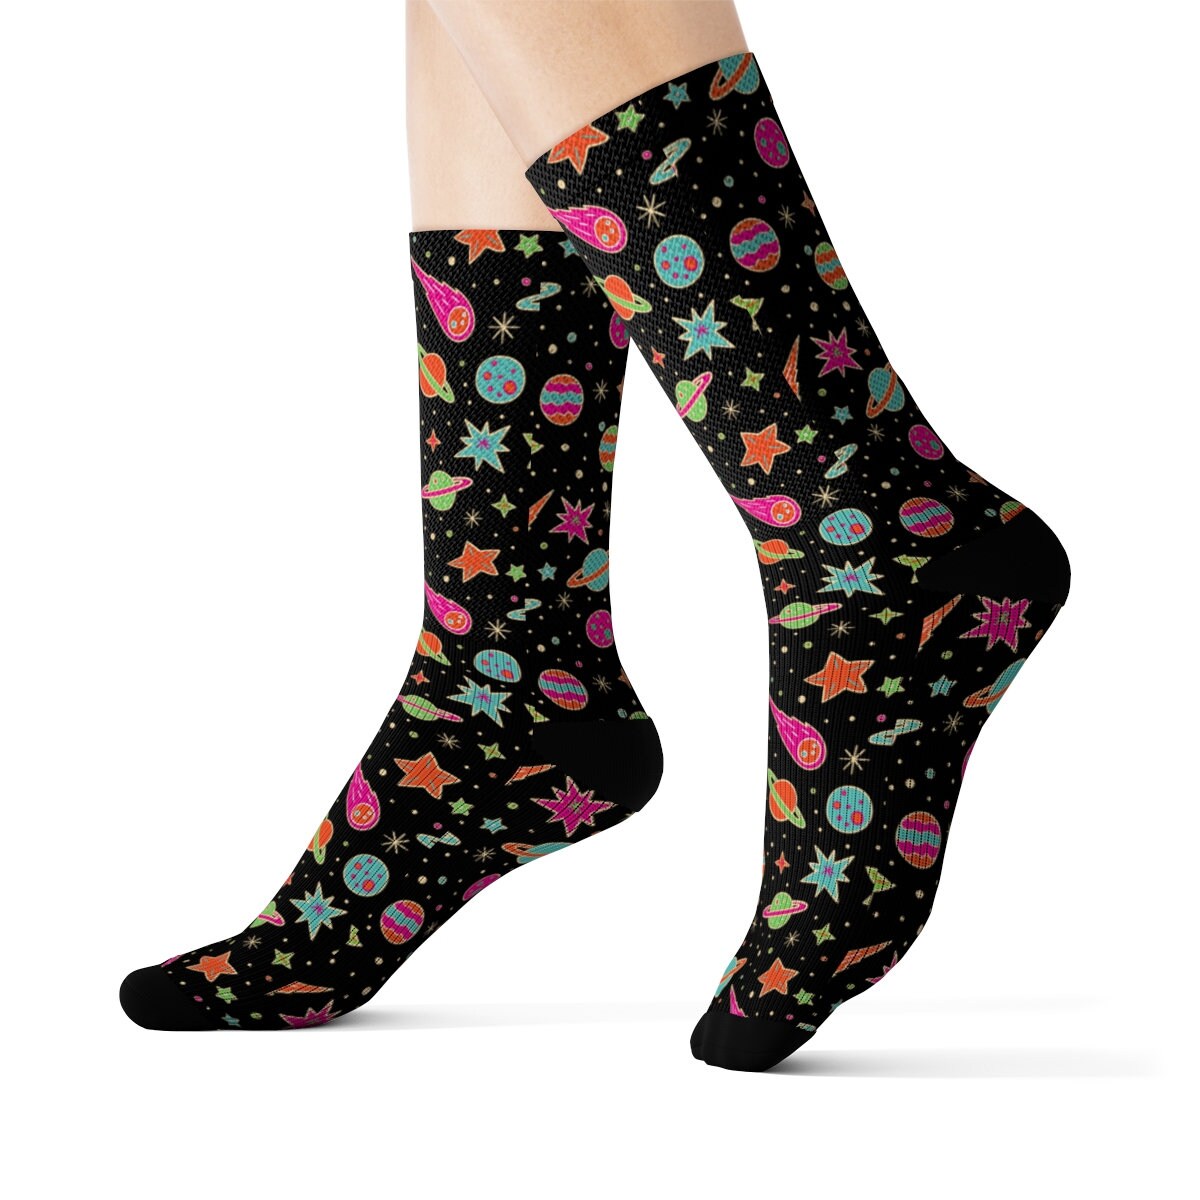 Neon Space Socks Bright Space Socks Fun Space Socks | Etsy